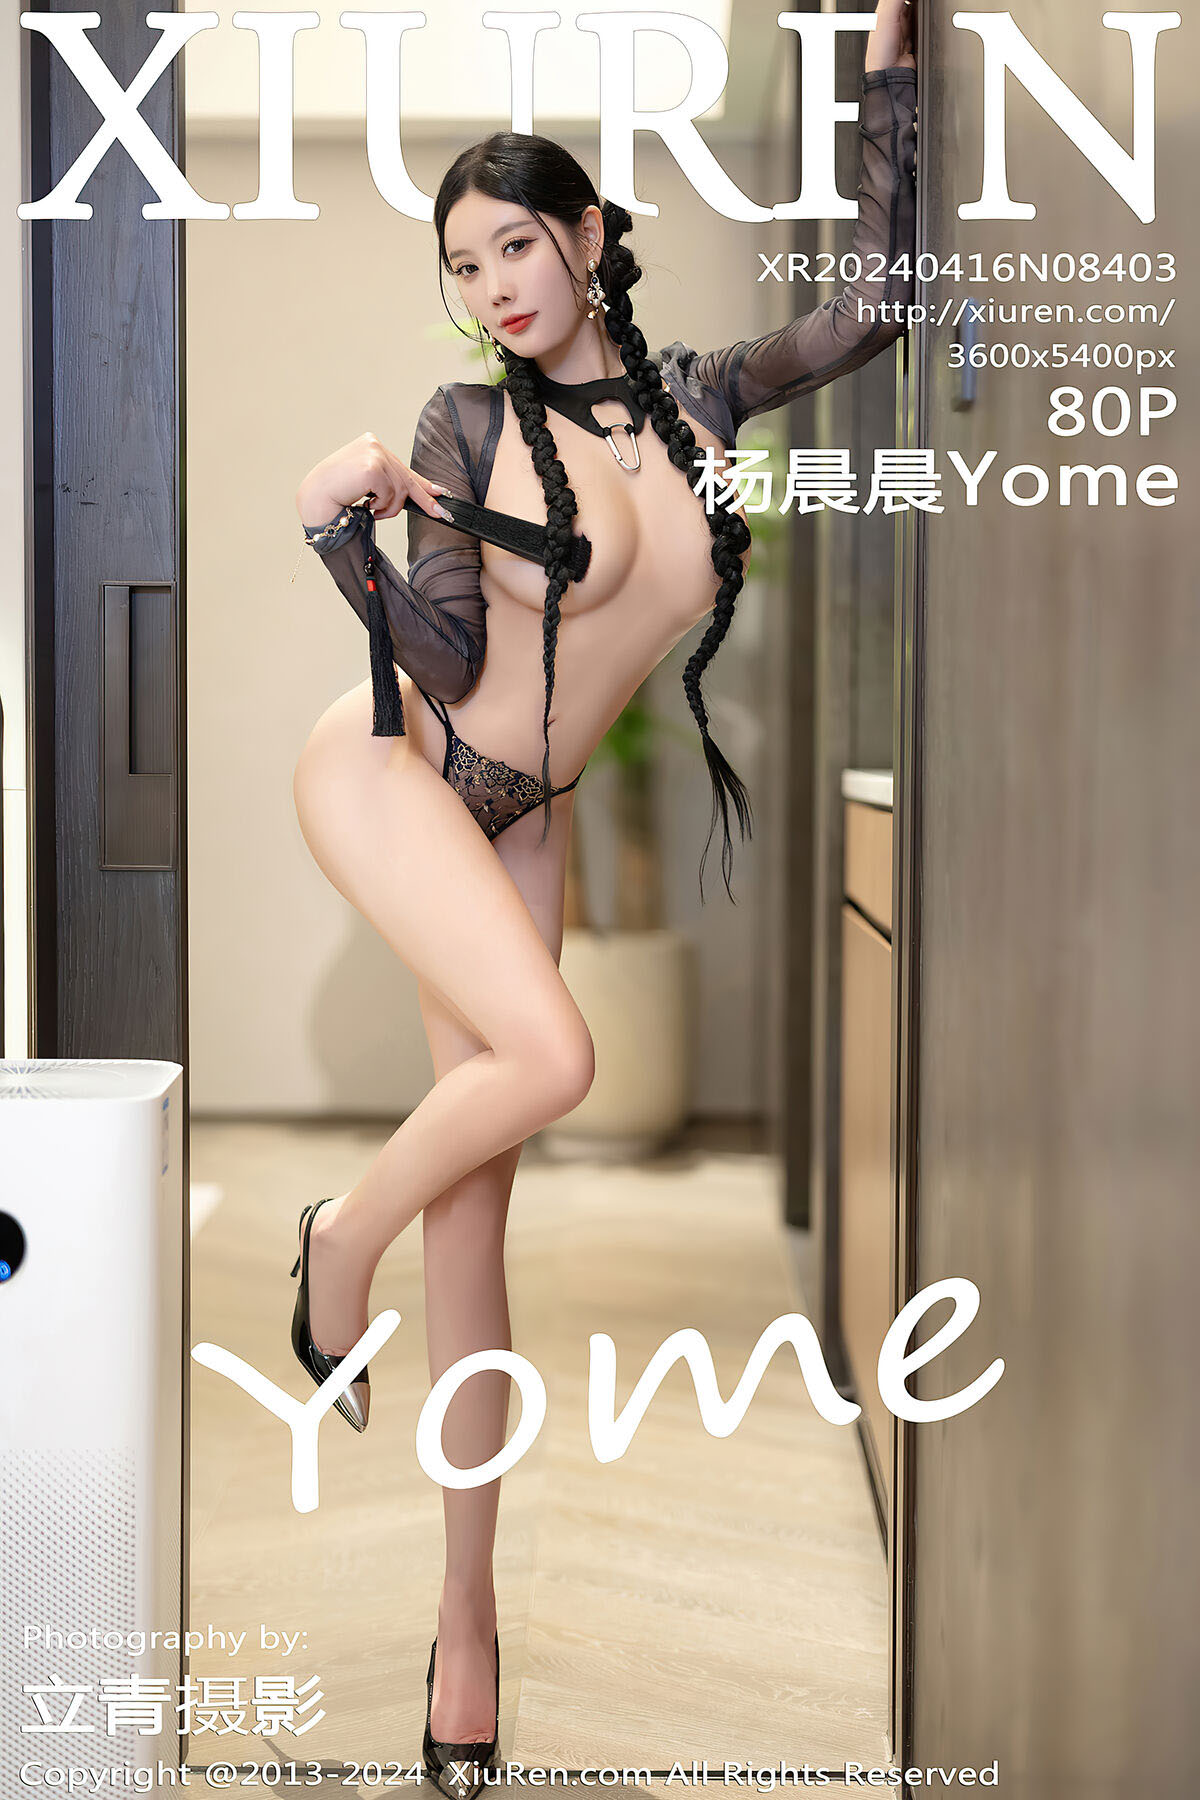 XiuRen No.8403 Yang Chen Chen Yome – Larose.VIP